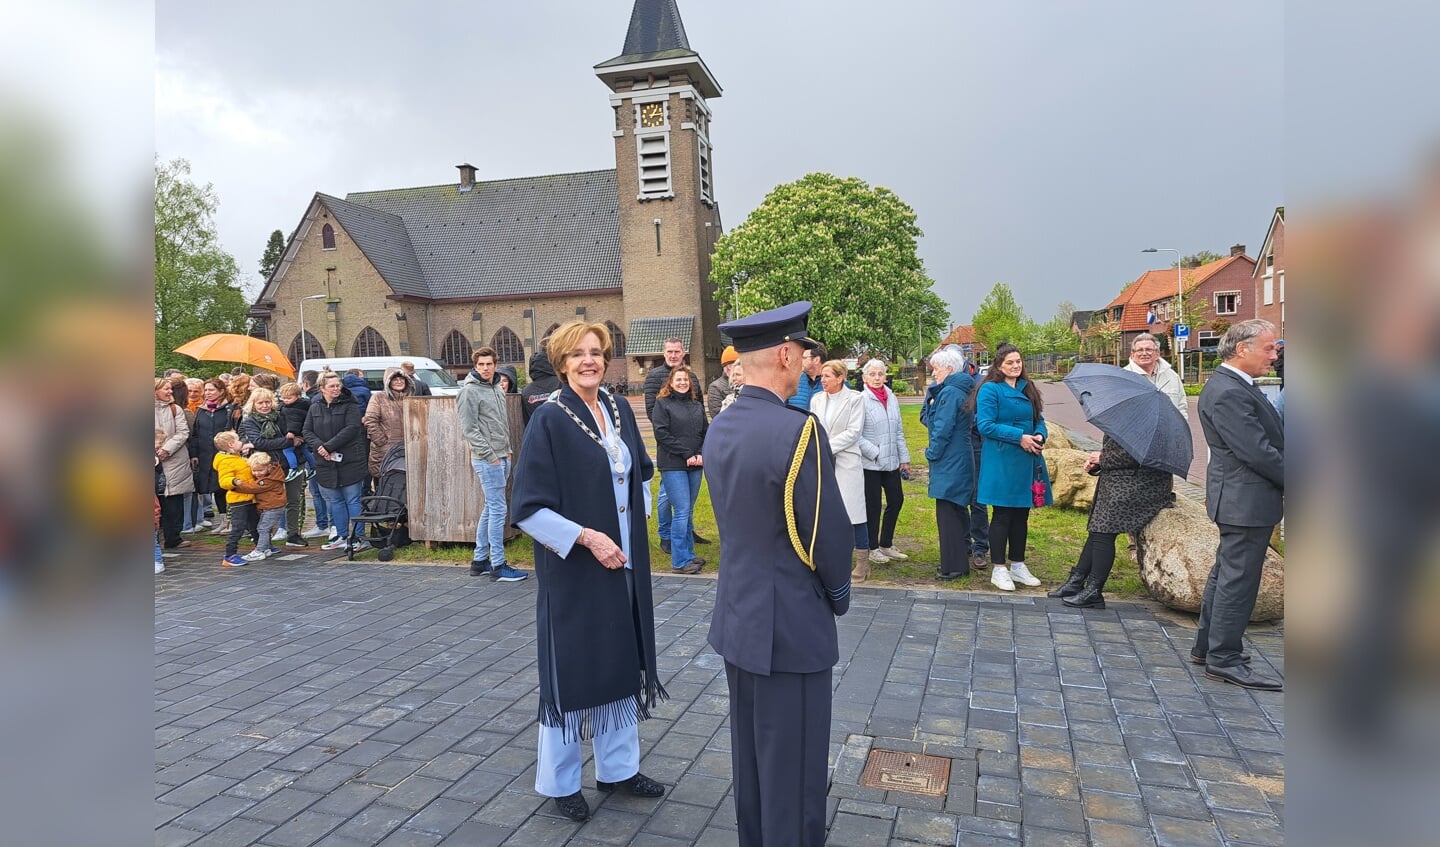 Burgemeester Bronsvoort wacht samen met veel belangstellenden op de komst van de koning. Foto: Kyra Broshuis